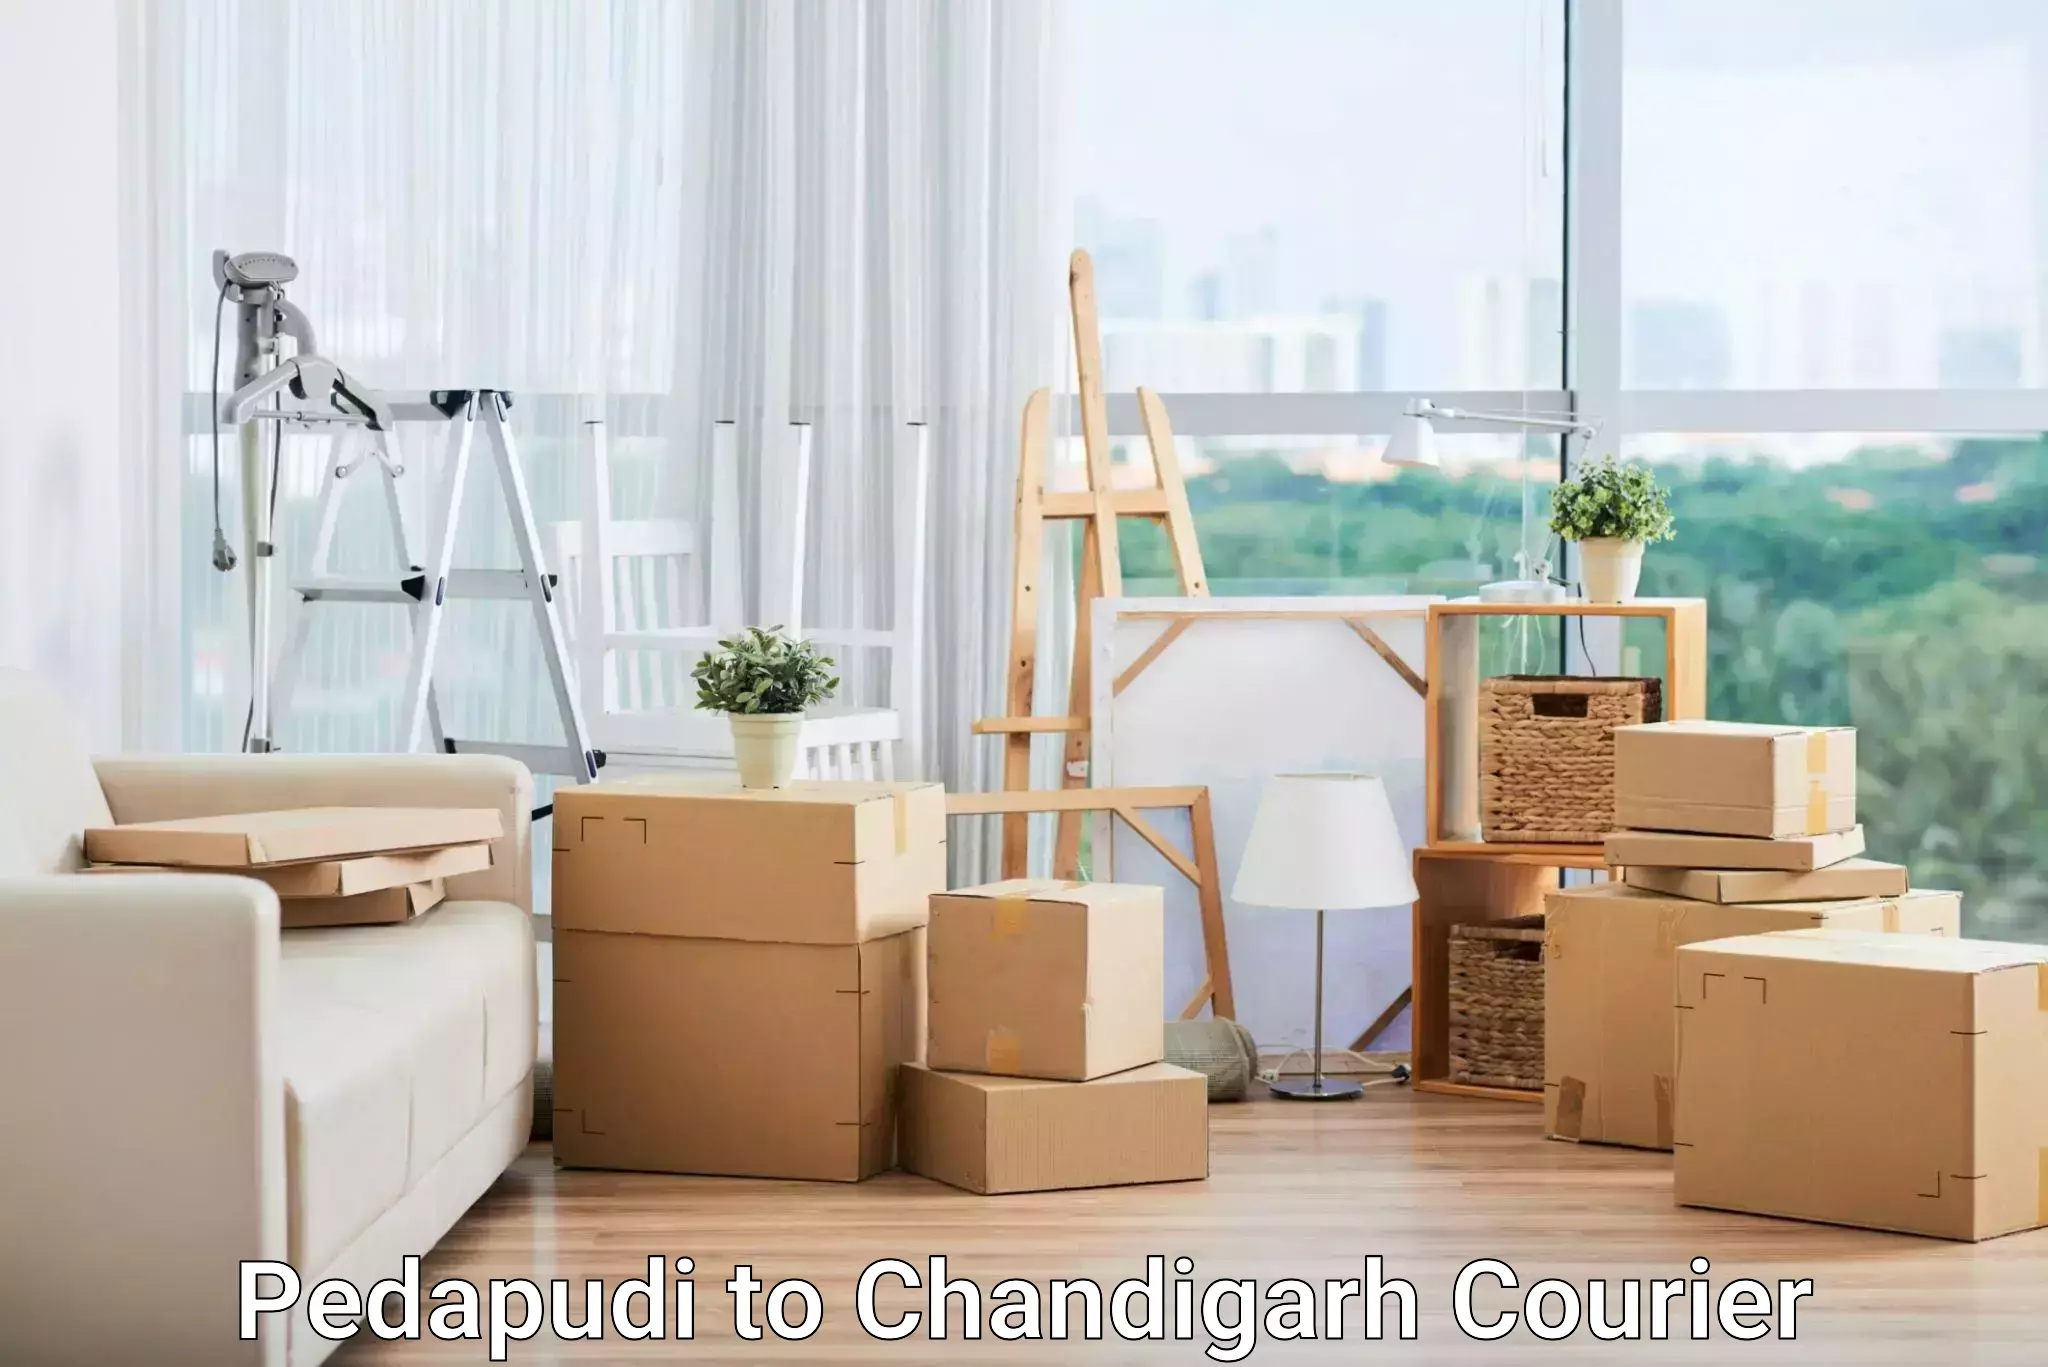 Customized shipping options Pedapudi to Panjab University Chandigarh